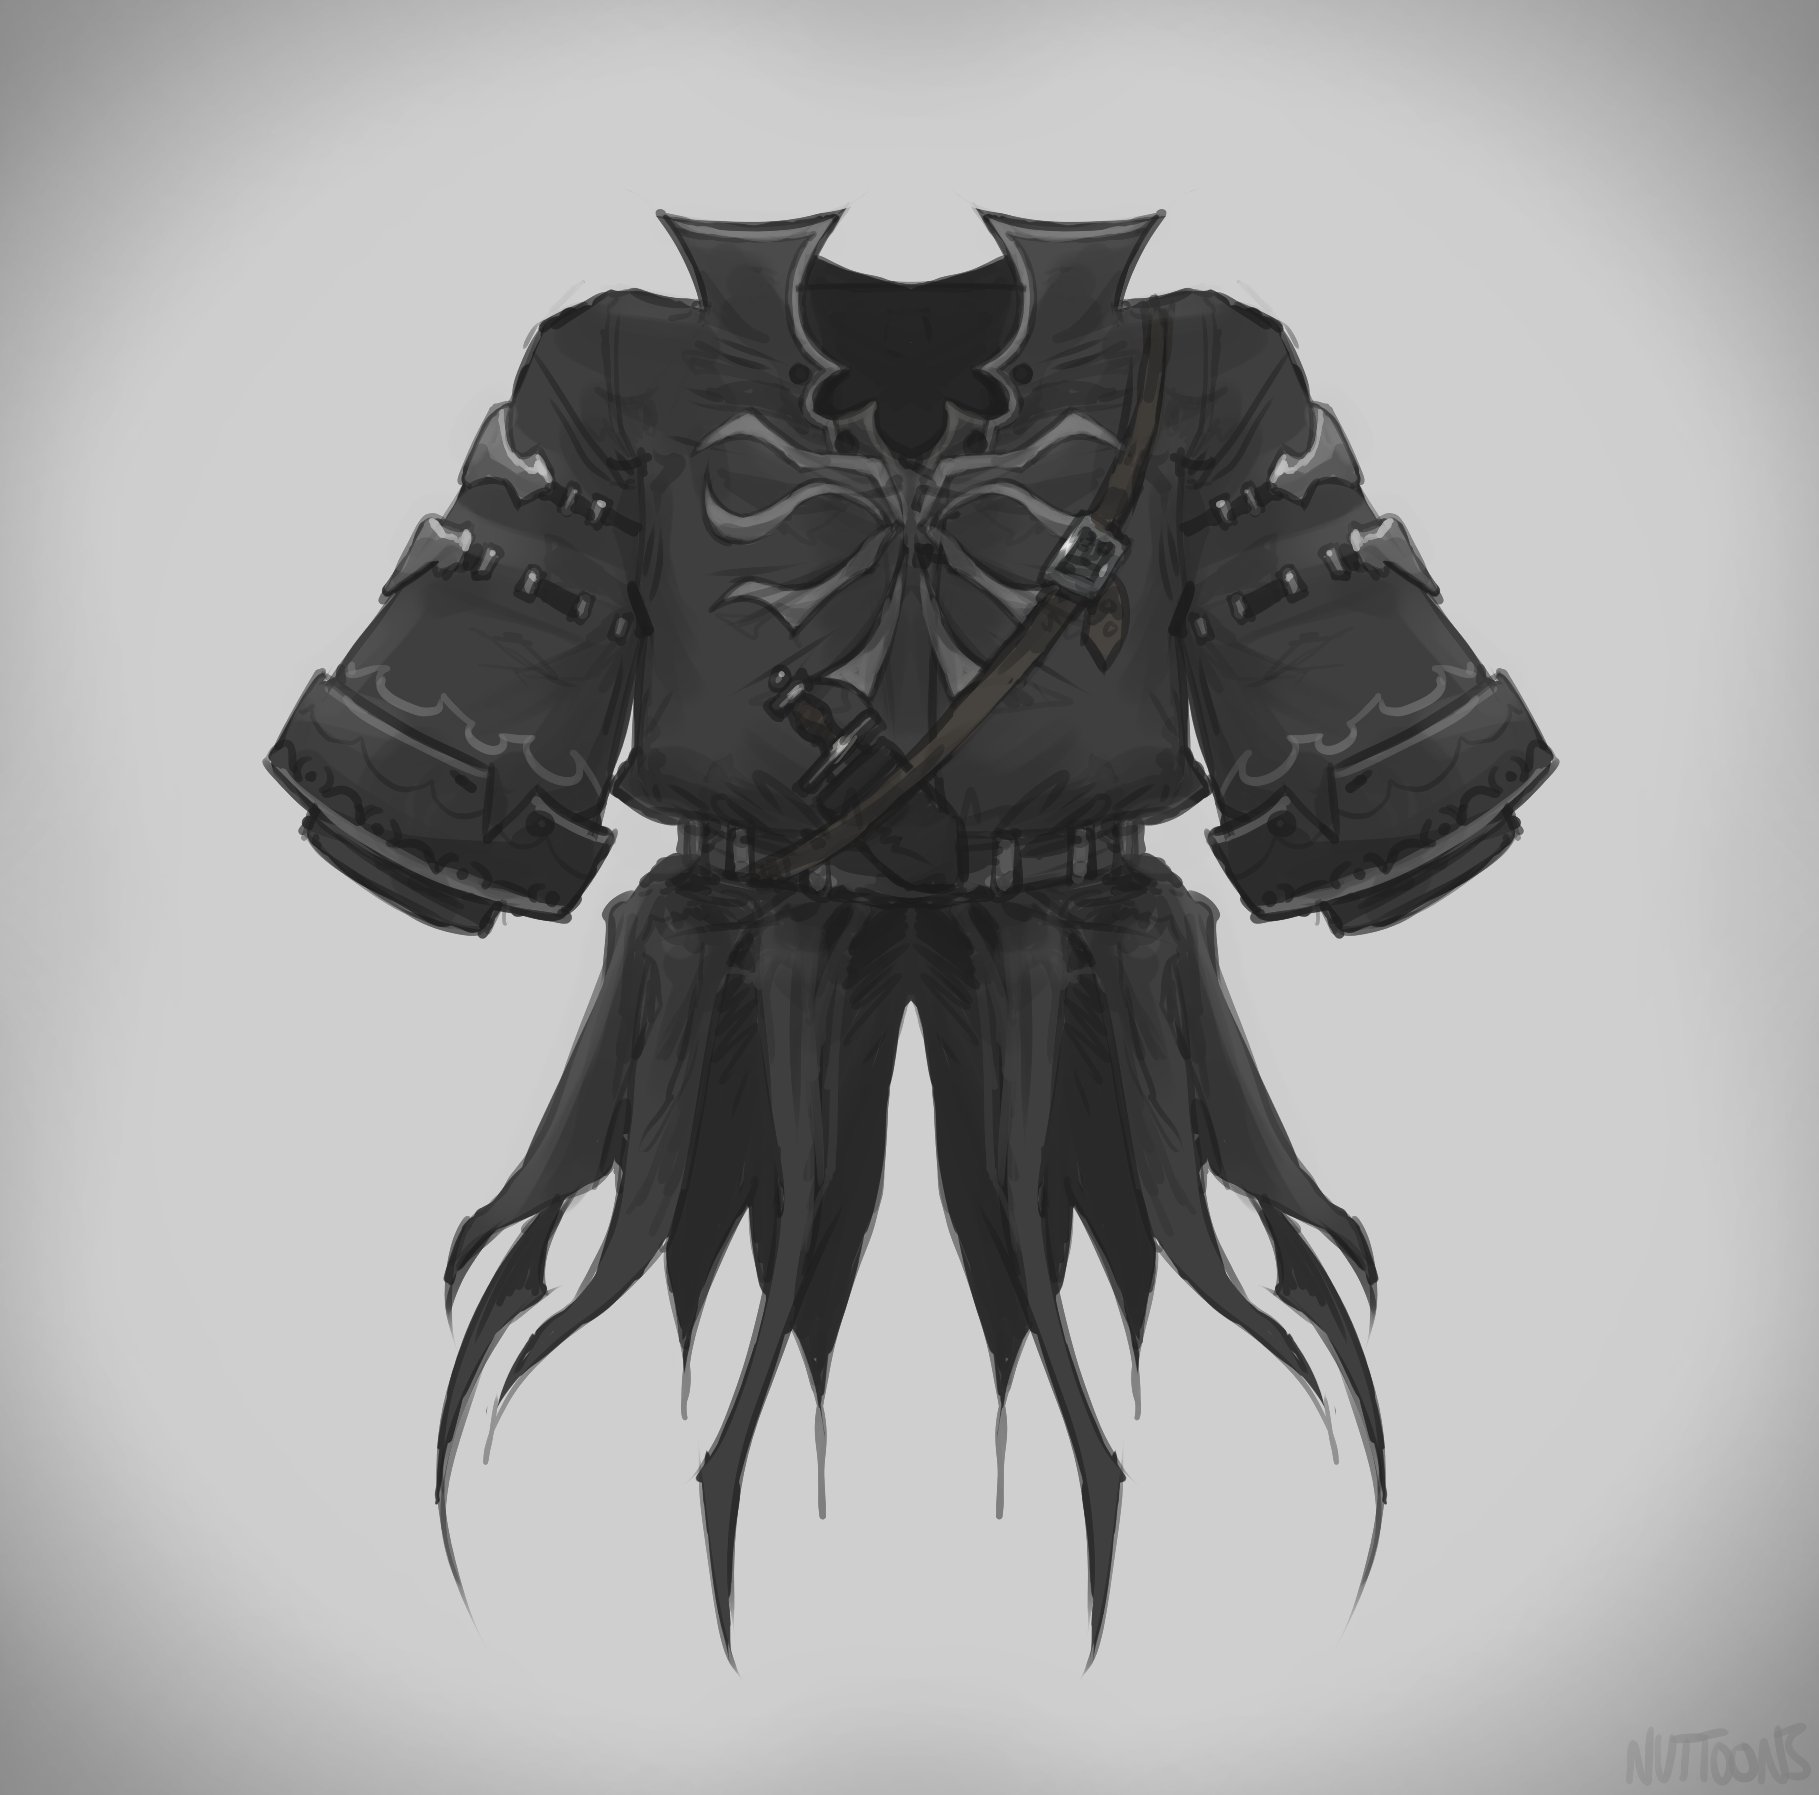 New Deepwoken armor [Mist Assassins Cloak] 